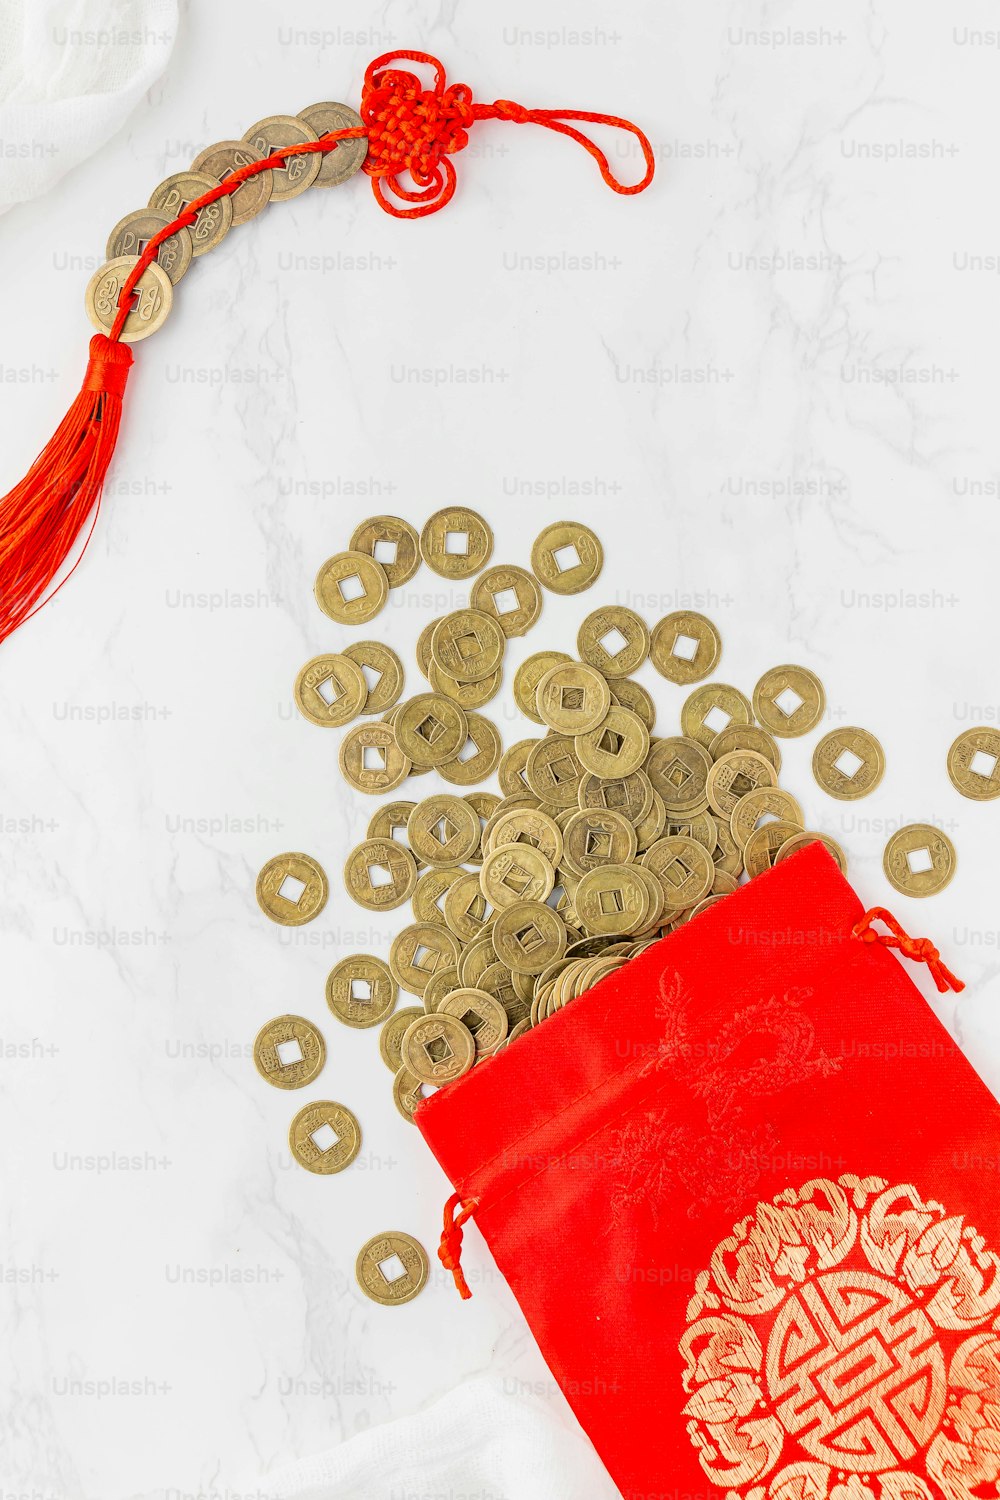 um saco vermelho cheio de moedas de ouro ao lado de um saco vermelho cheio de moedas de ouro